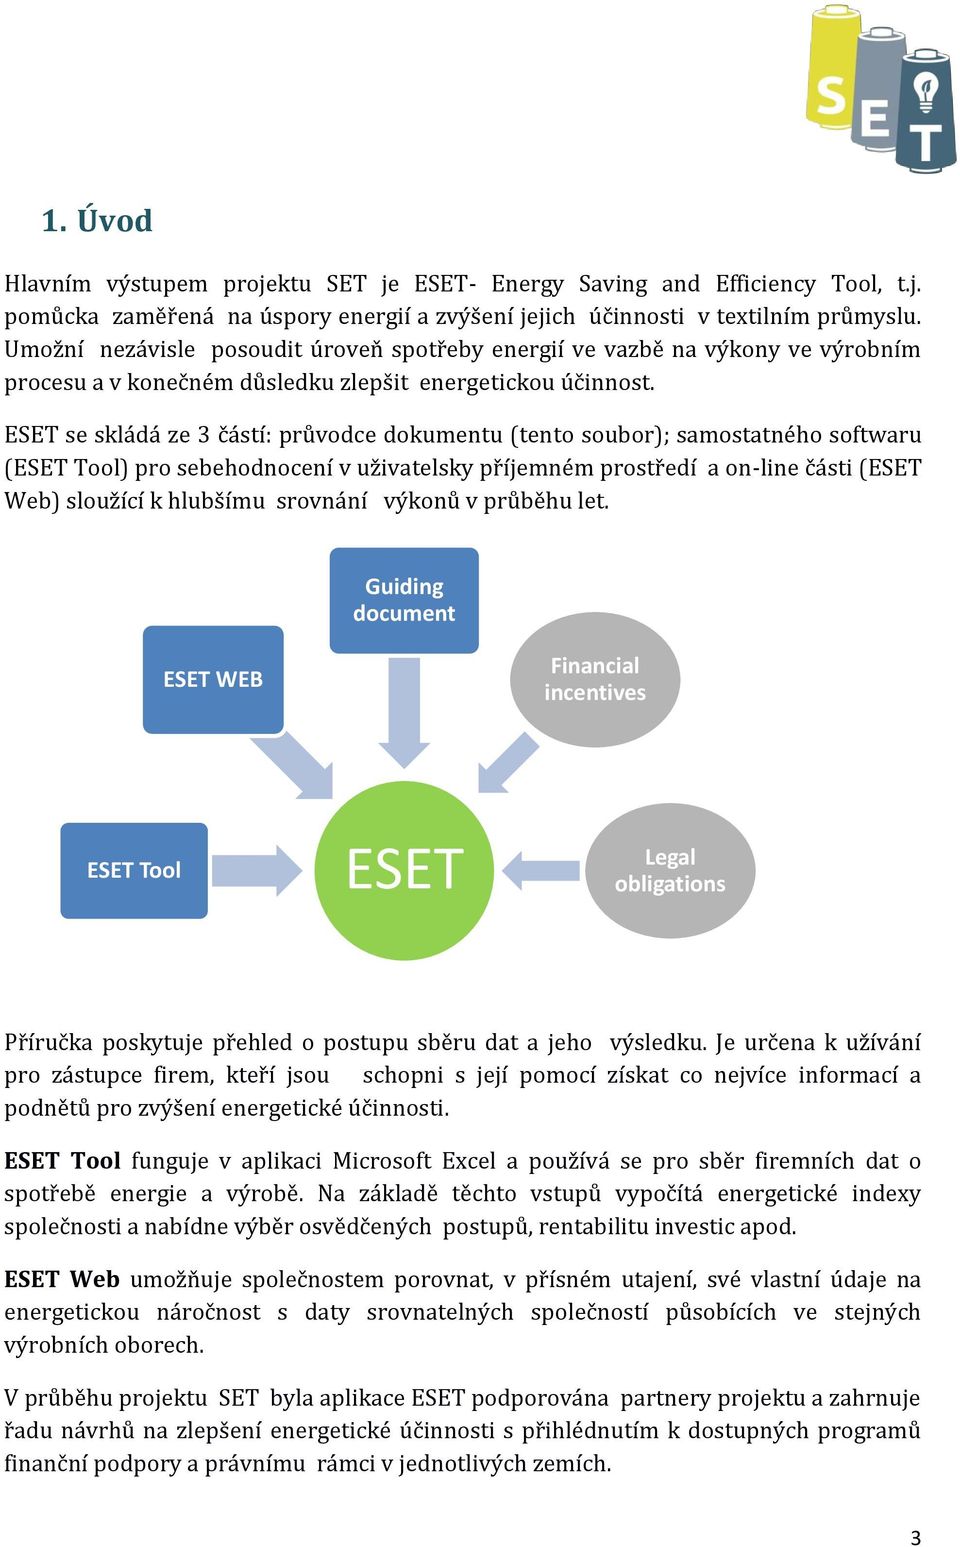 ESET se skládá ze 3 částí: průvodce dokumentu (tento soubor); samostatného softwaru (ESET Tool) pro sebehodnocení v uživatelsky příjemném prostředí a on-line části (ESET Web) sloužící k hlubšímu